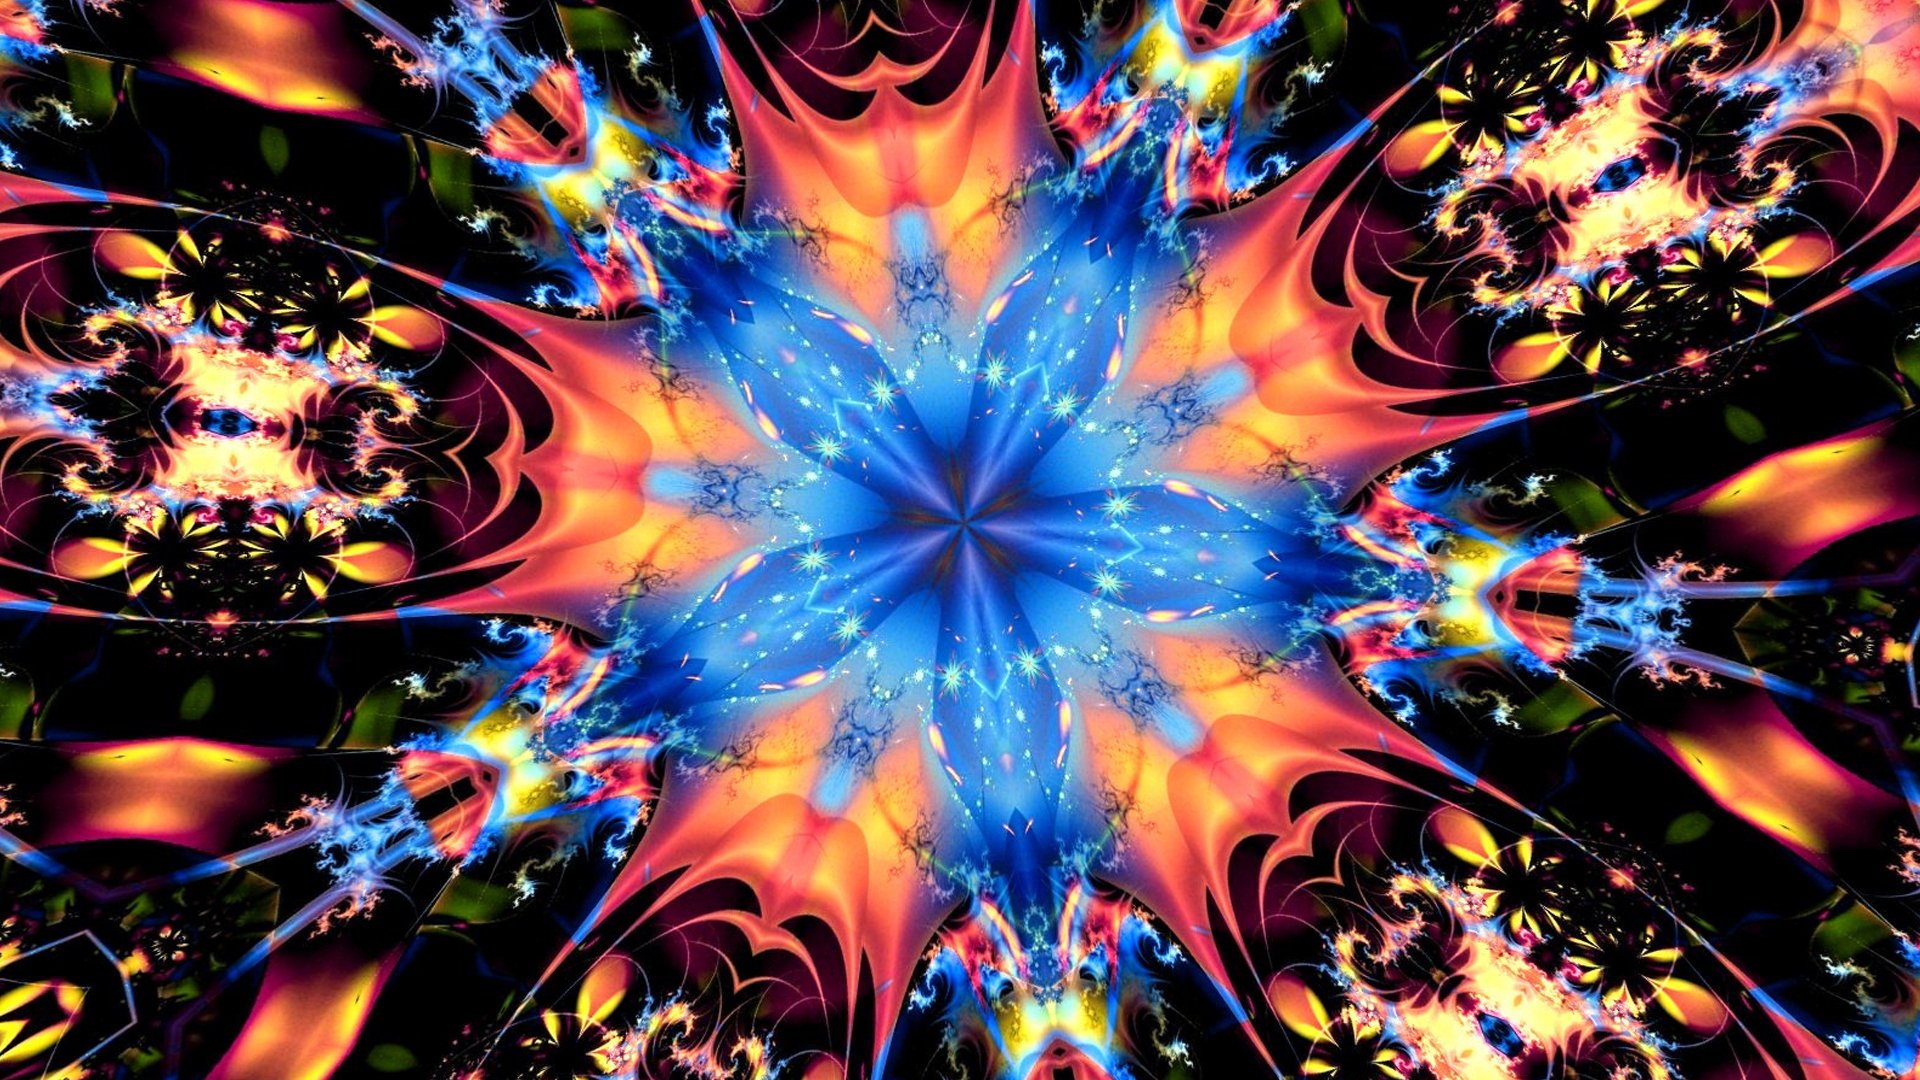 kaleidoscope background images